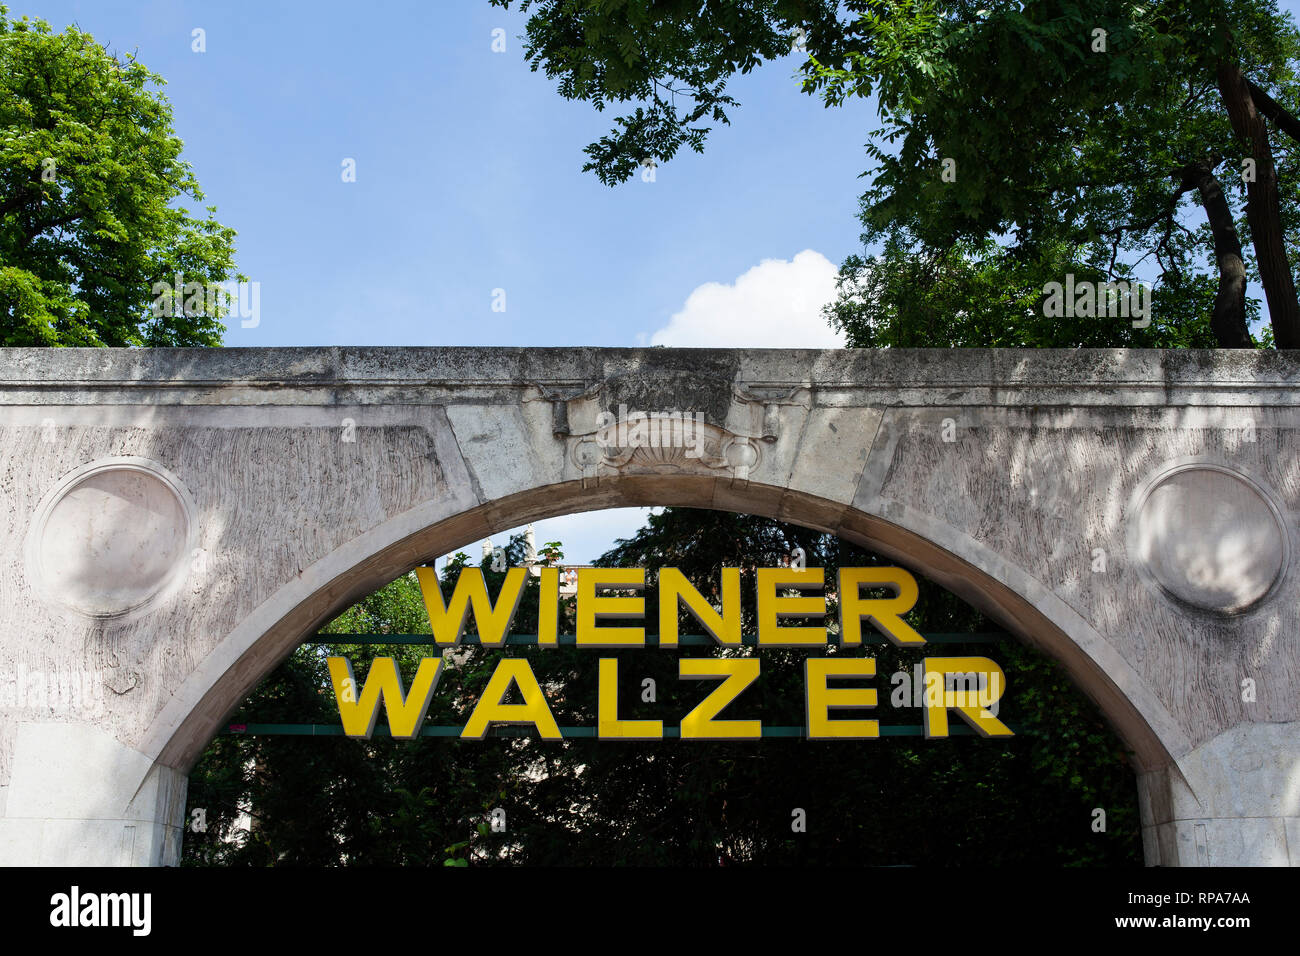 Vienne, Autriche - 22 MAI : pancarte valse viennoise sur l'arc de l'entrée du bâtiment viennois le 22 mai, 2018 Banque D'Images